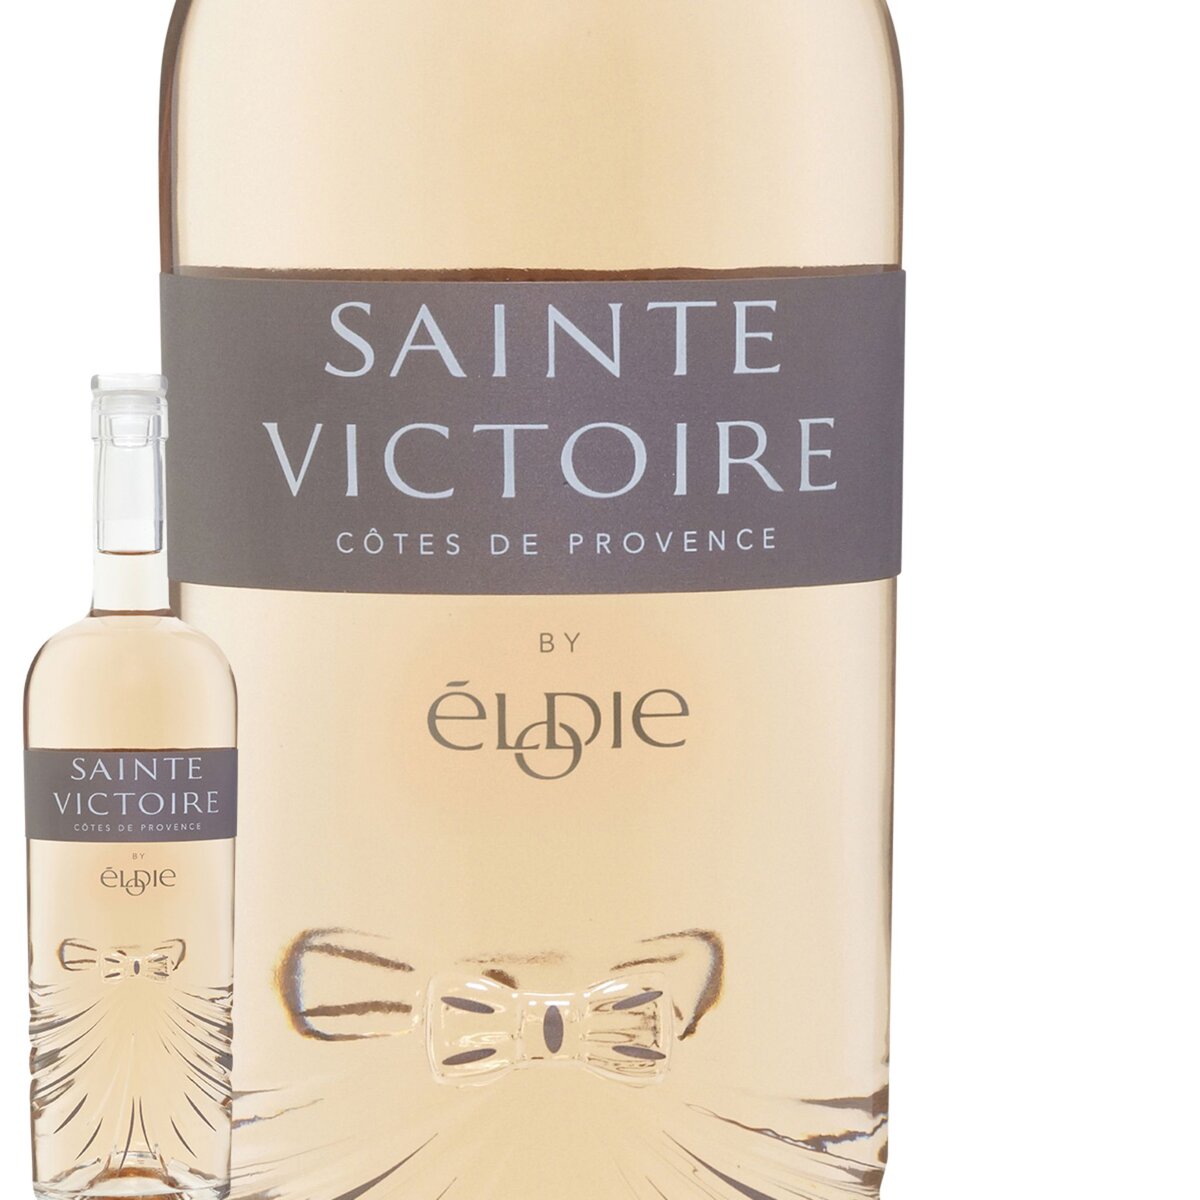 Sainte Victoire by Elodie Côtes de Provence Rosé 2015